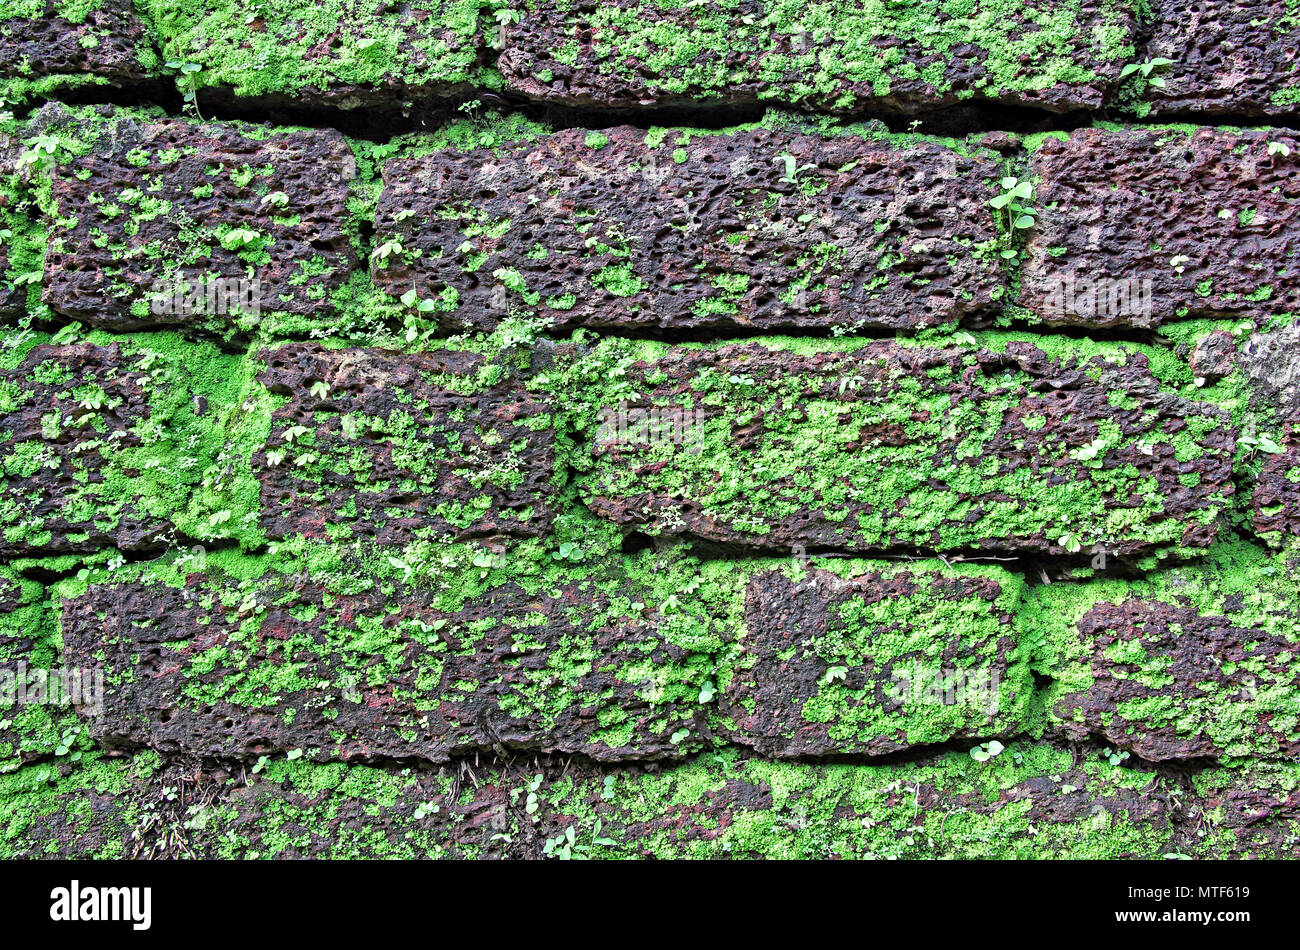 Hintergrund der laterite stone wall mit Gras und Moos Wachstum bilden schöne Muster auf dem Gesicht Stockfoto